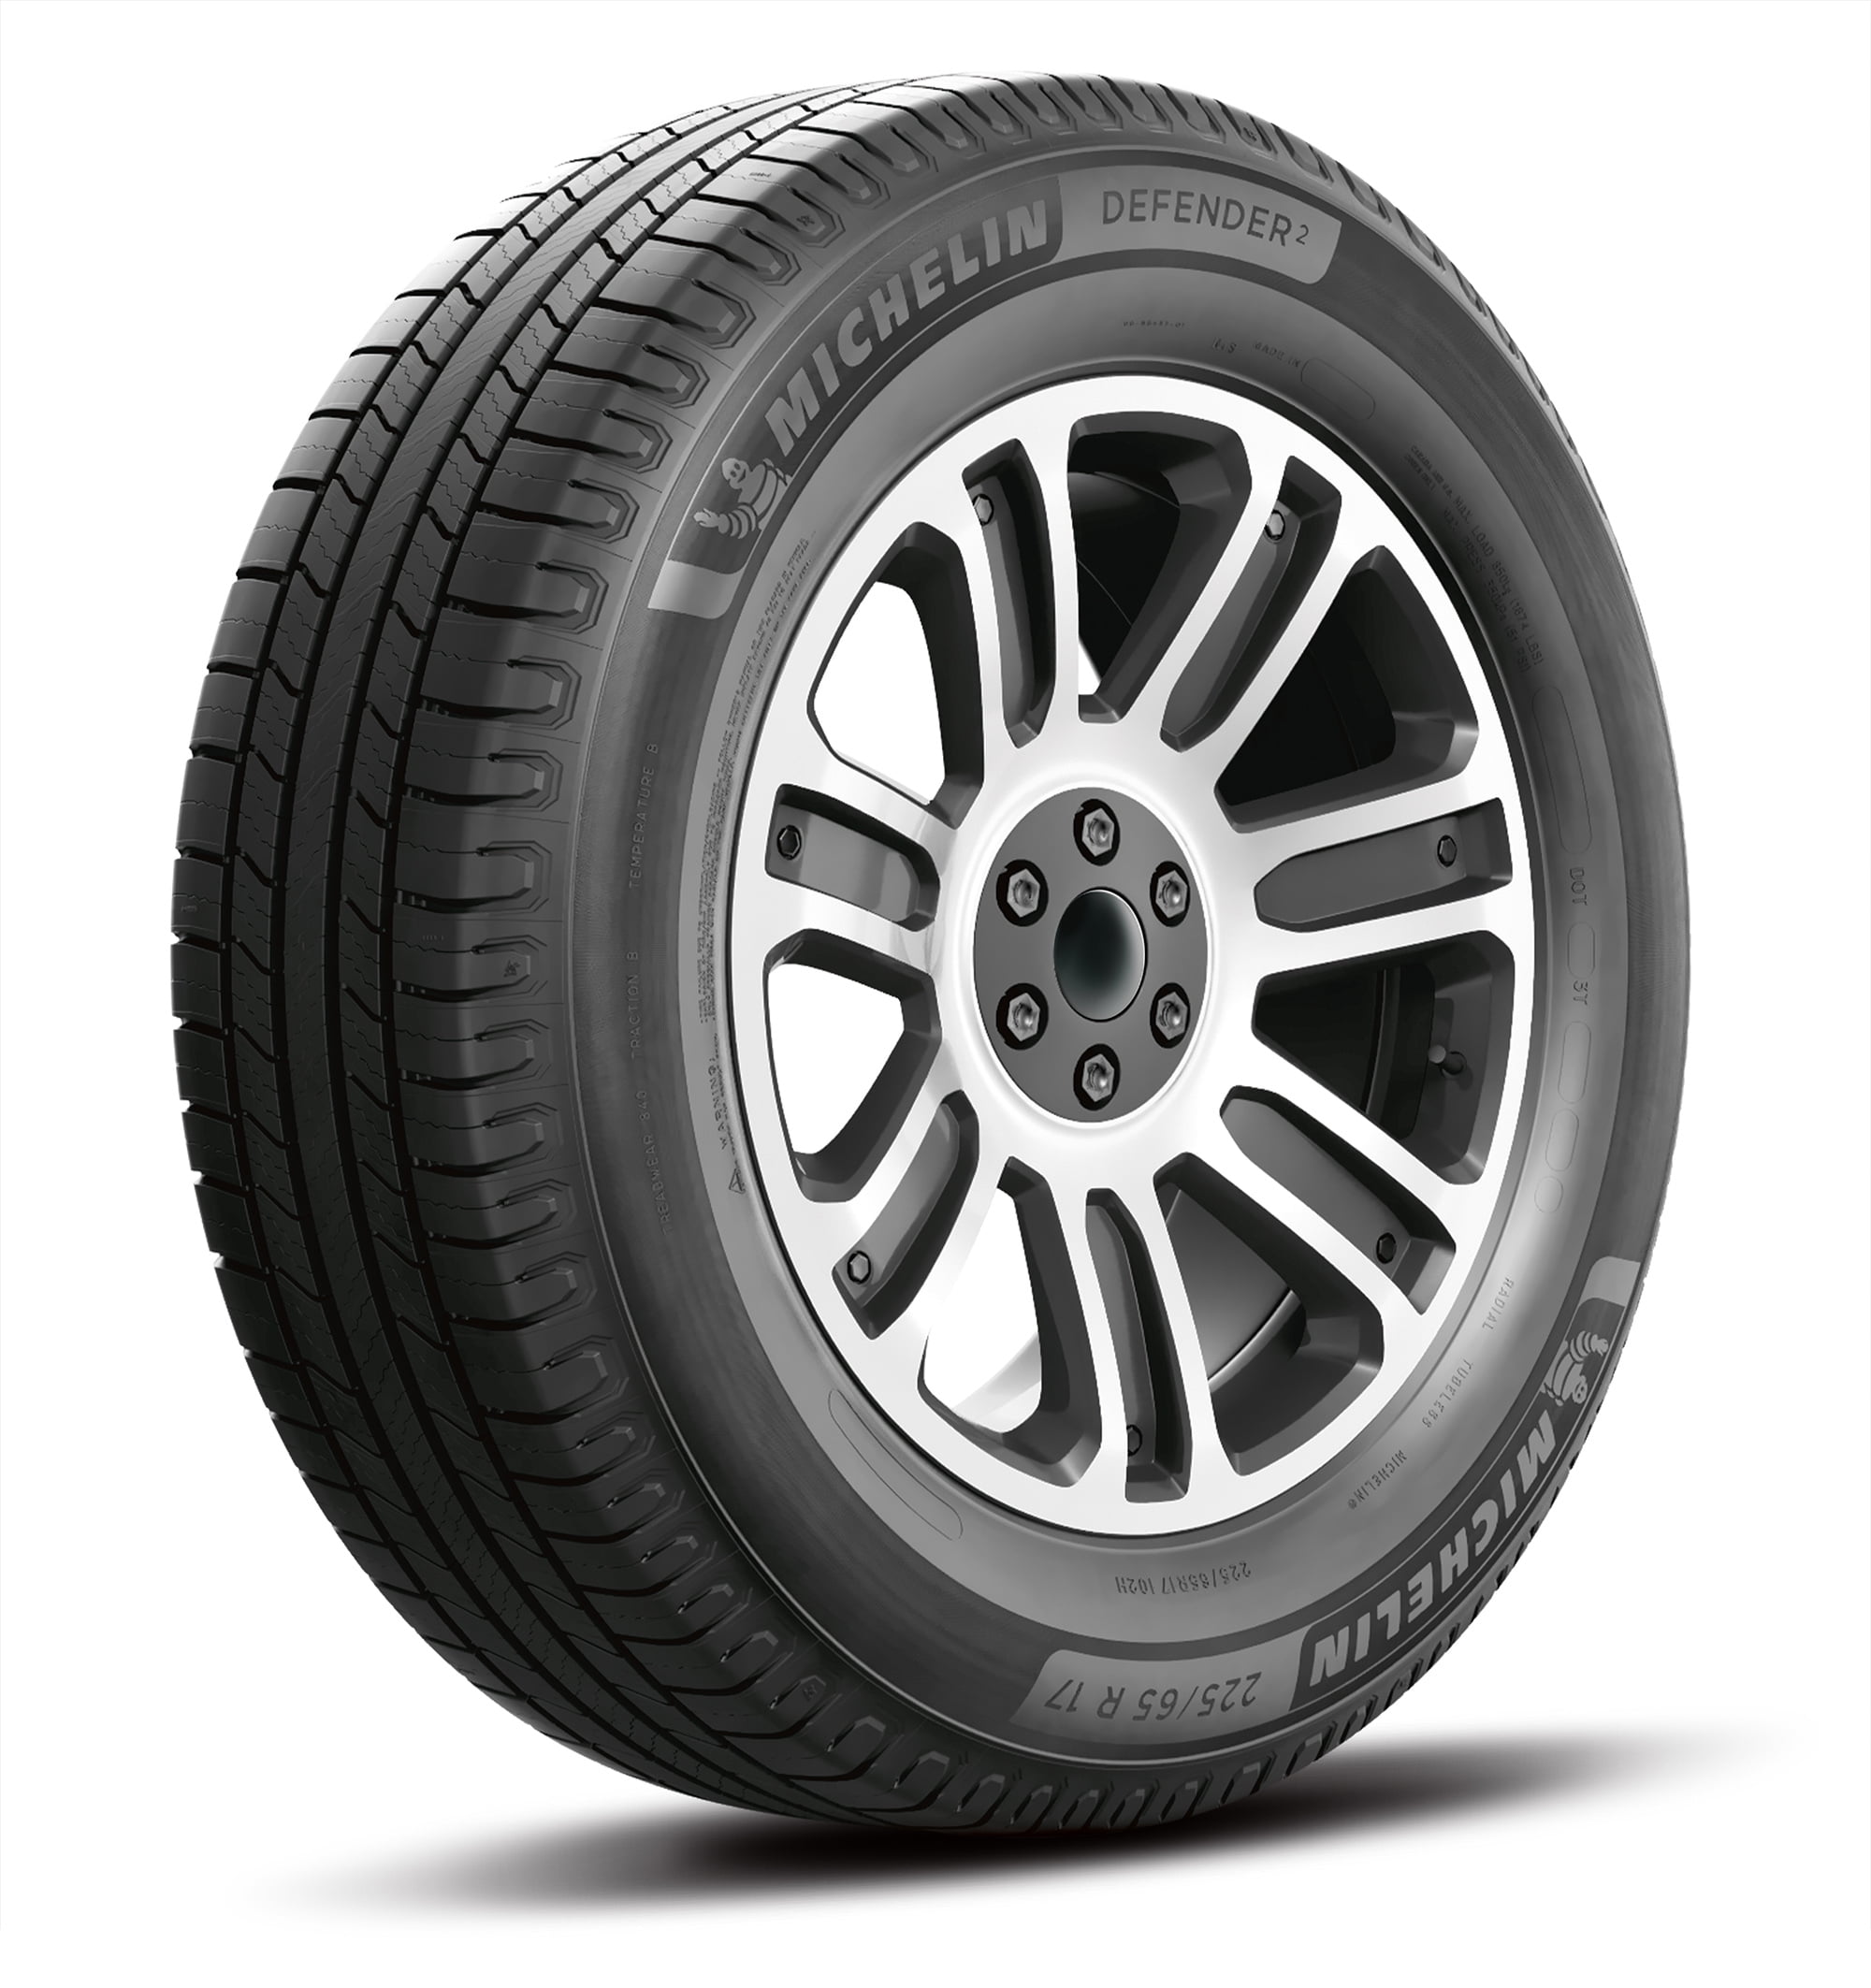 Michelin Defender2 All-Season 205/55R16 91H Tire